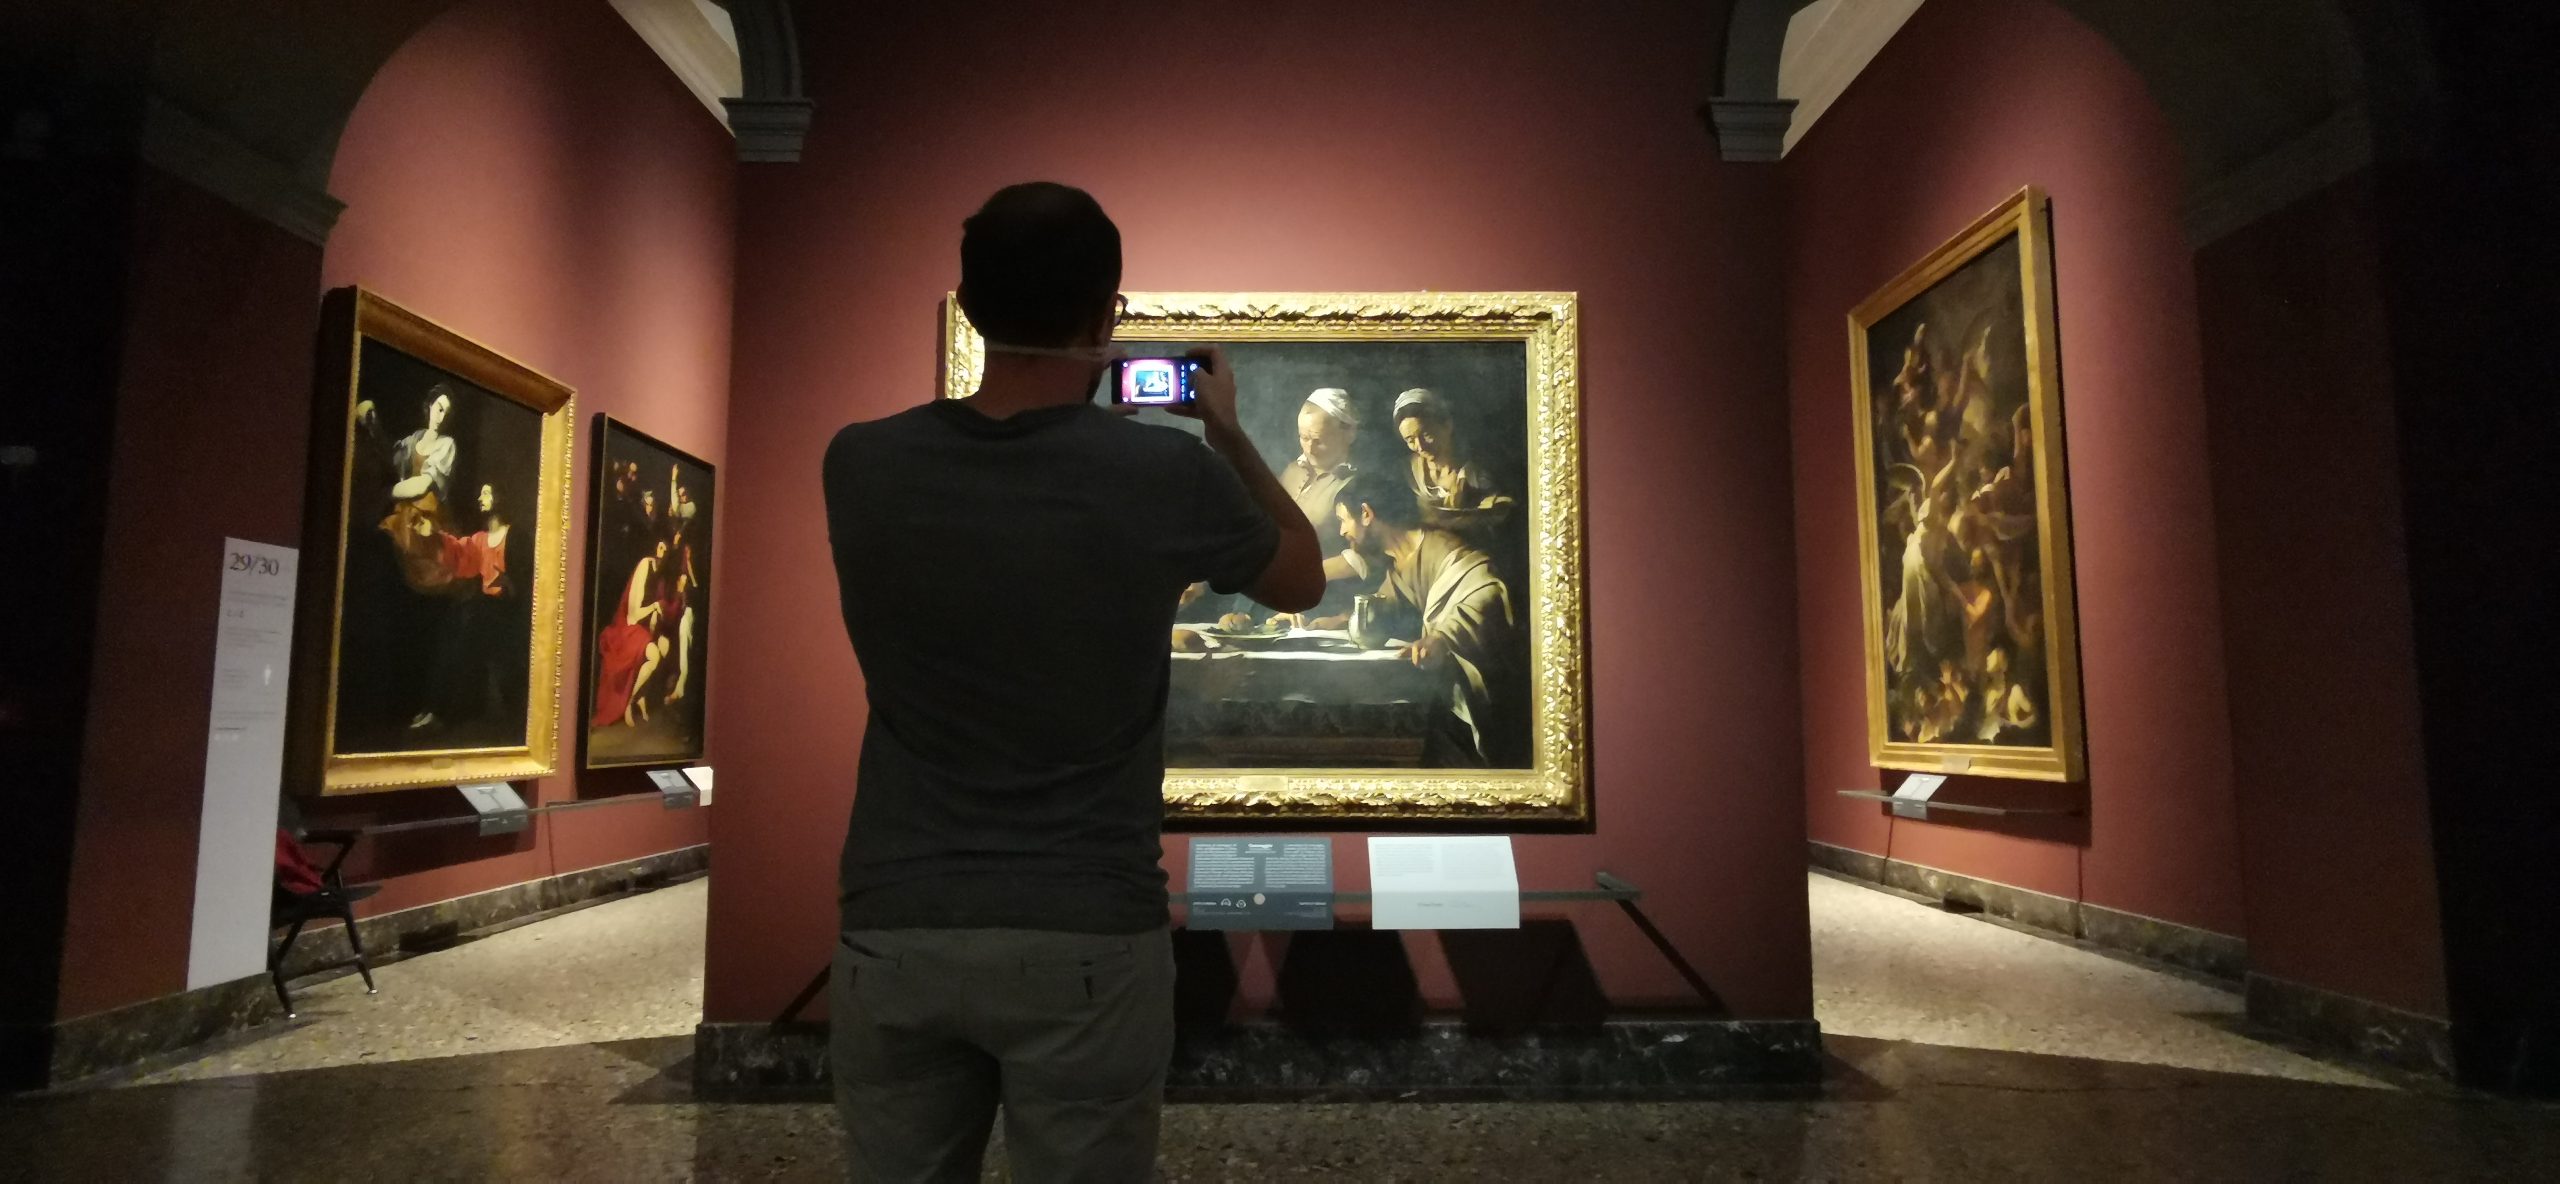 Las 6 obras imperdibles de la Pinacoteca de Brera